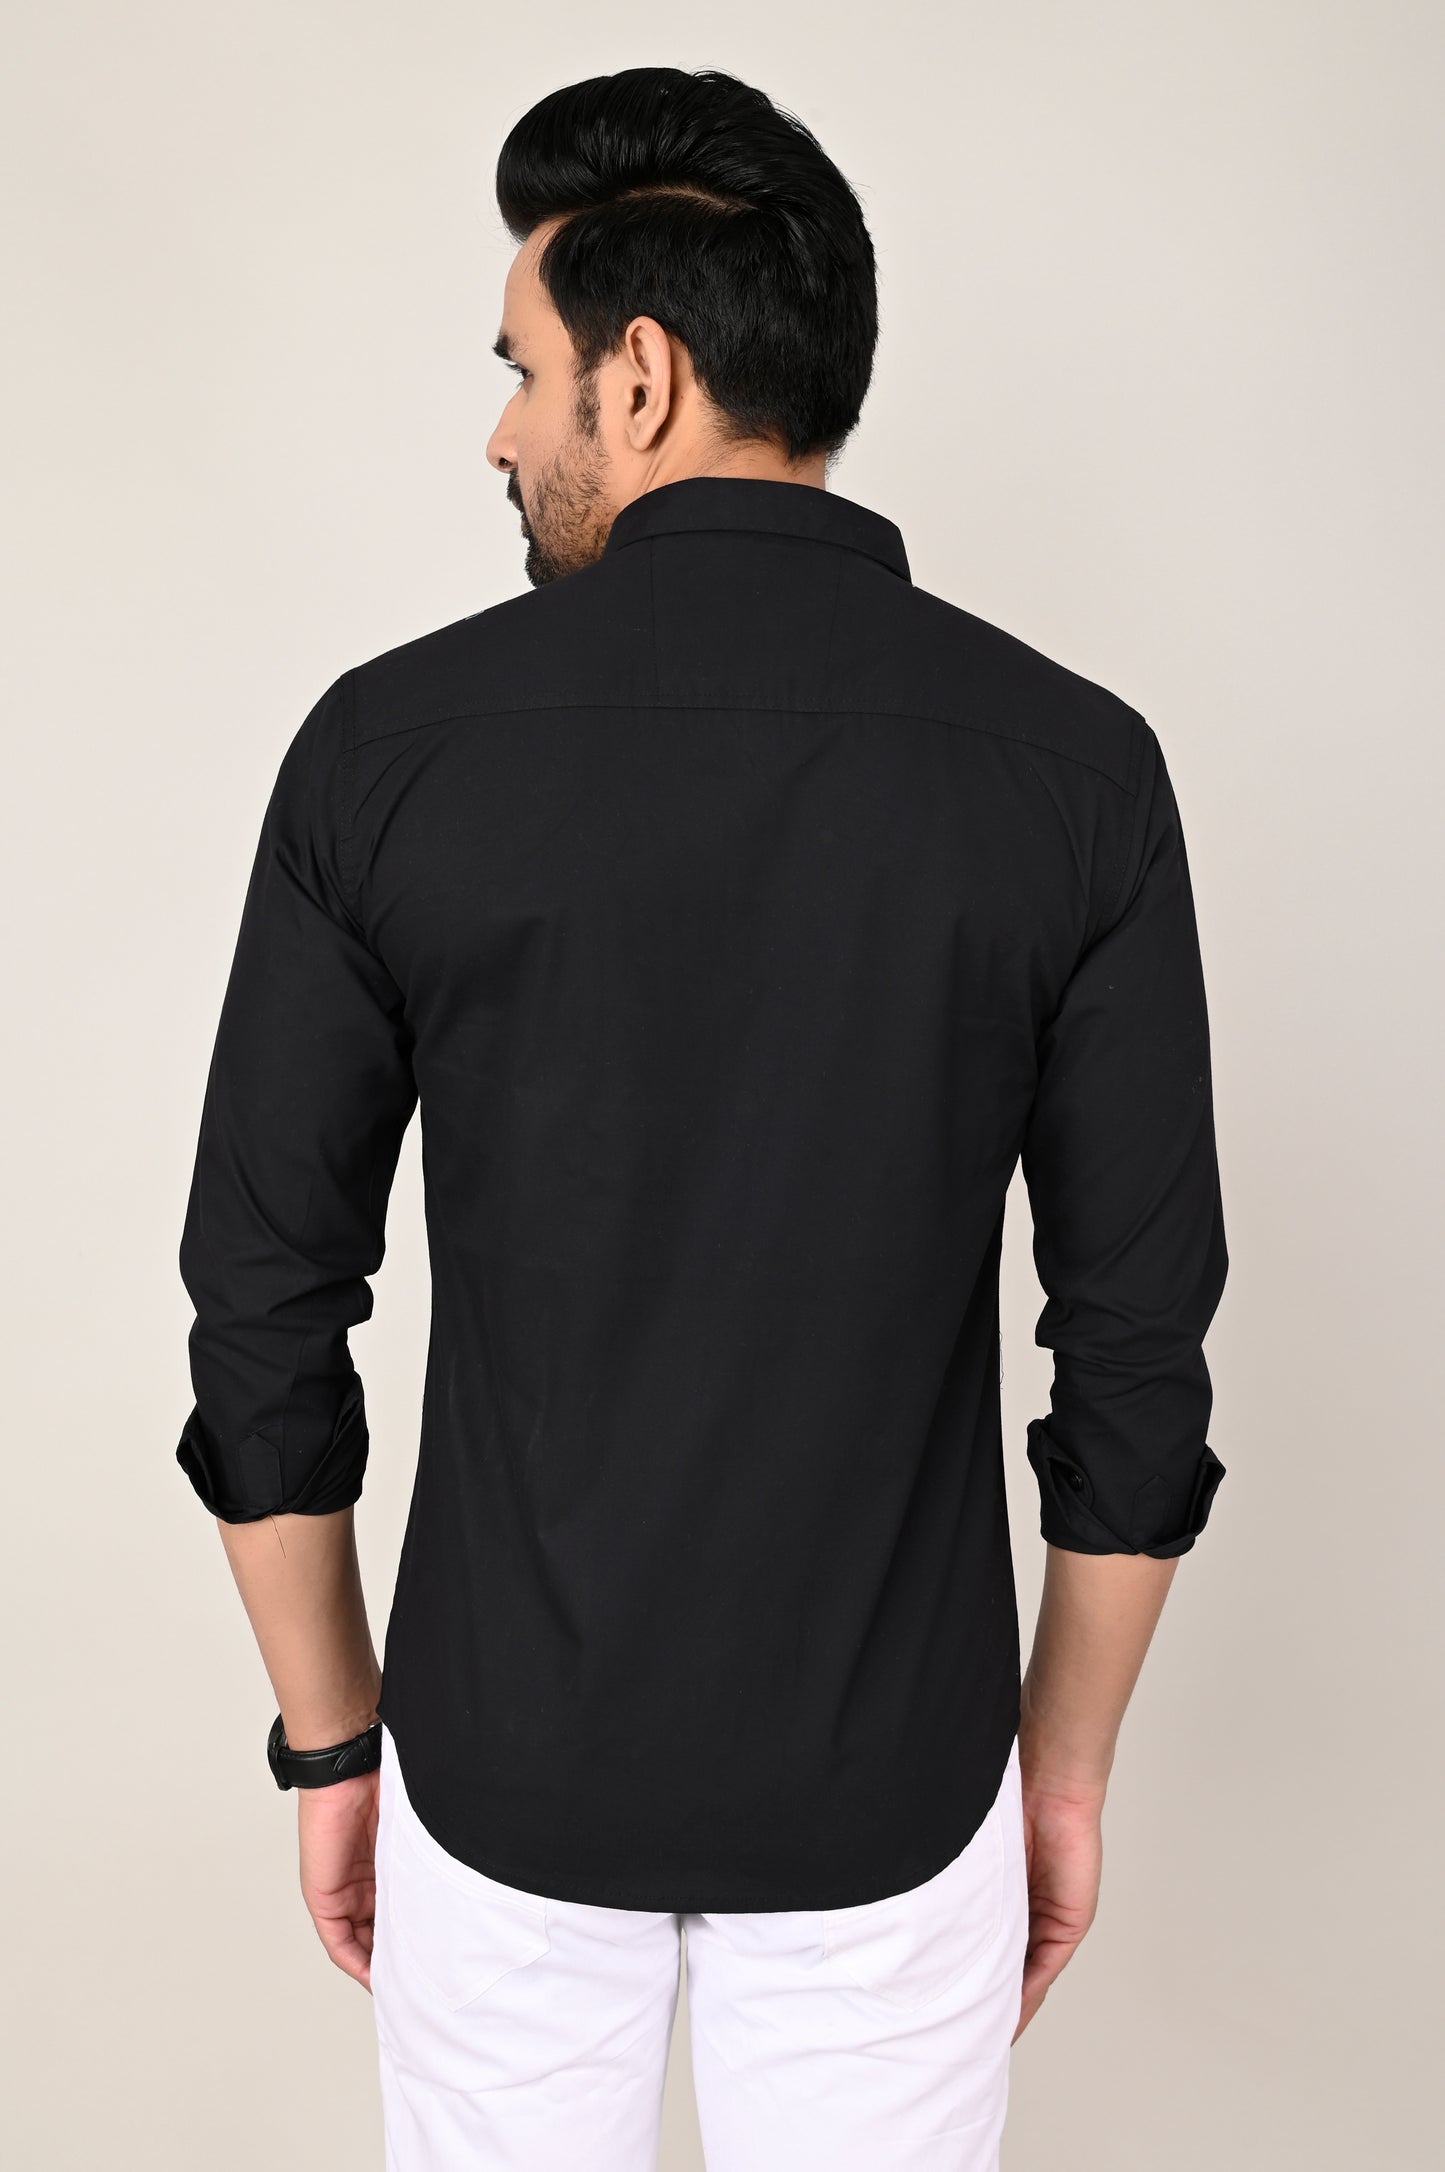 Men's Black Full Sleeves shirts